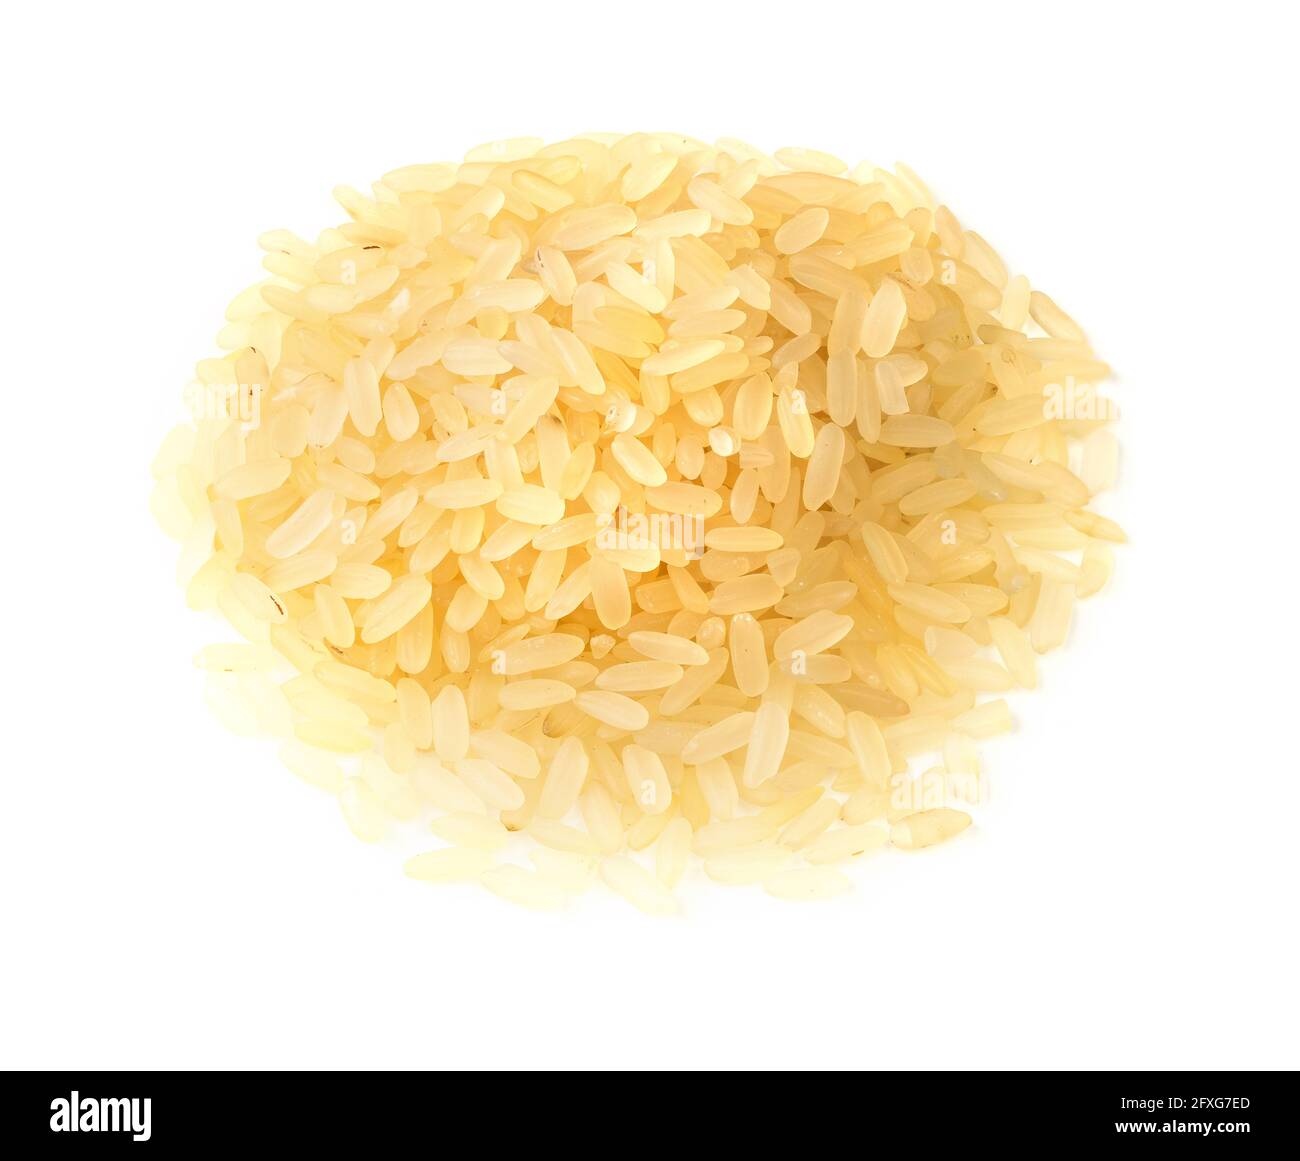 une poignée de riz étuvé brut sur fond blanc Banque D'Images